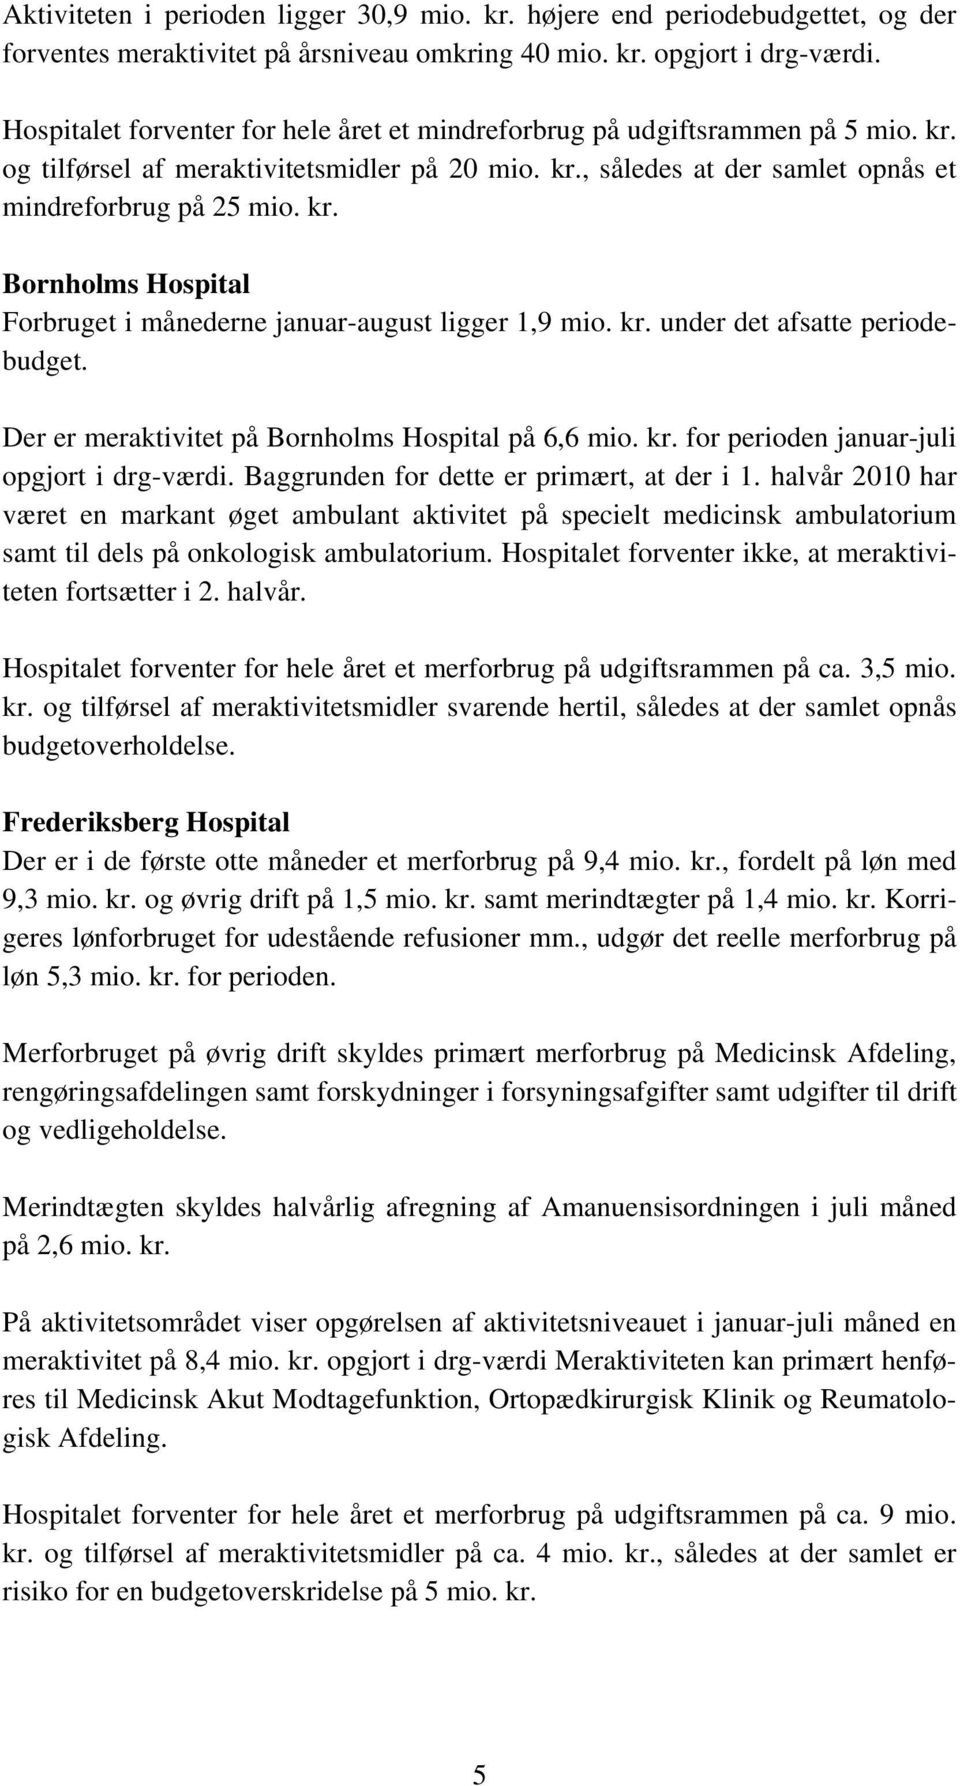 kr. under det afsatte periodebudget. Der er meraktivitet på Bornholms Hospital på 6,6 mio. kr. for perioden januar-juli opgjort i drg-værdi. Baggrunden for dette er primært, at der i 1.